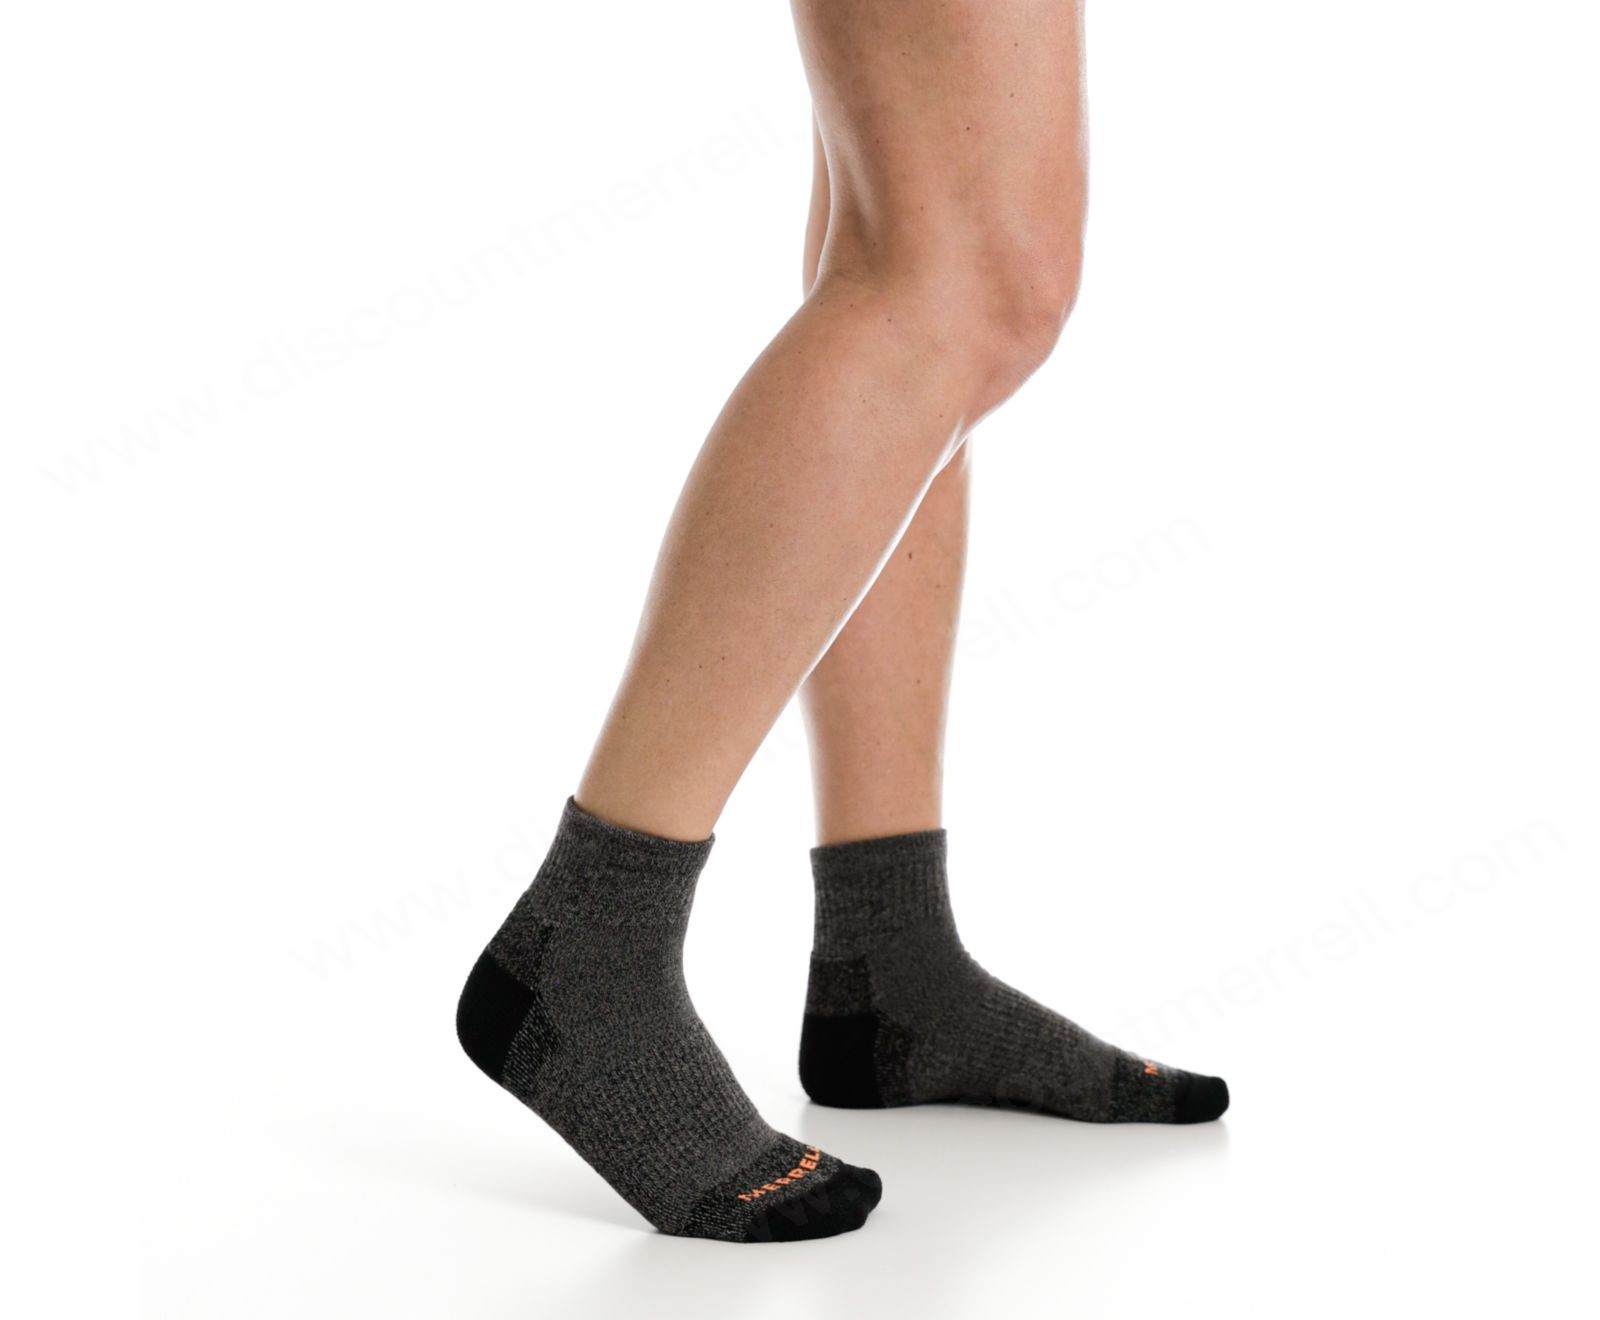 Merrell - Moab Hiker Ankle Sock - Merrell - Moab Hiker Ankle Sock